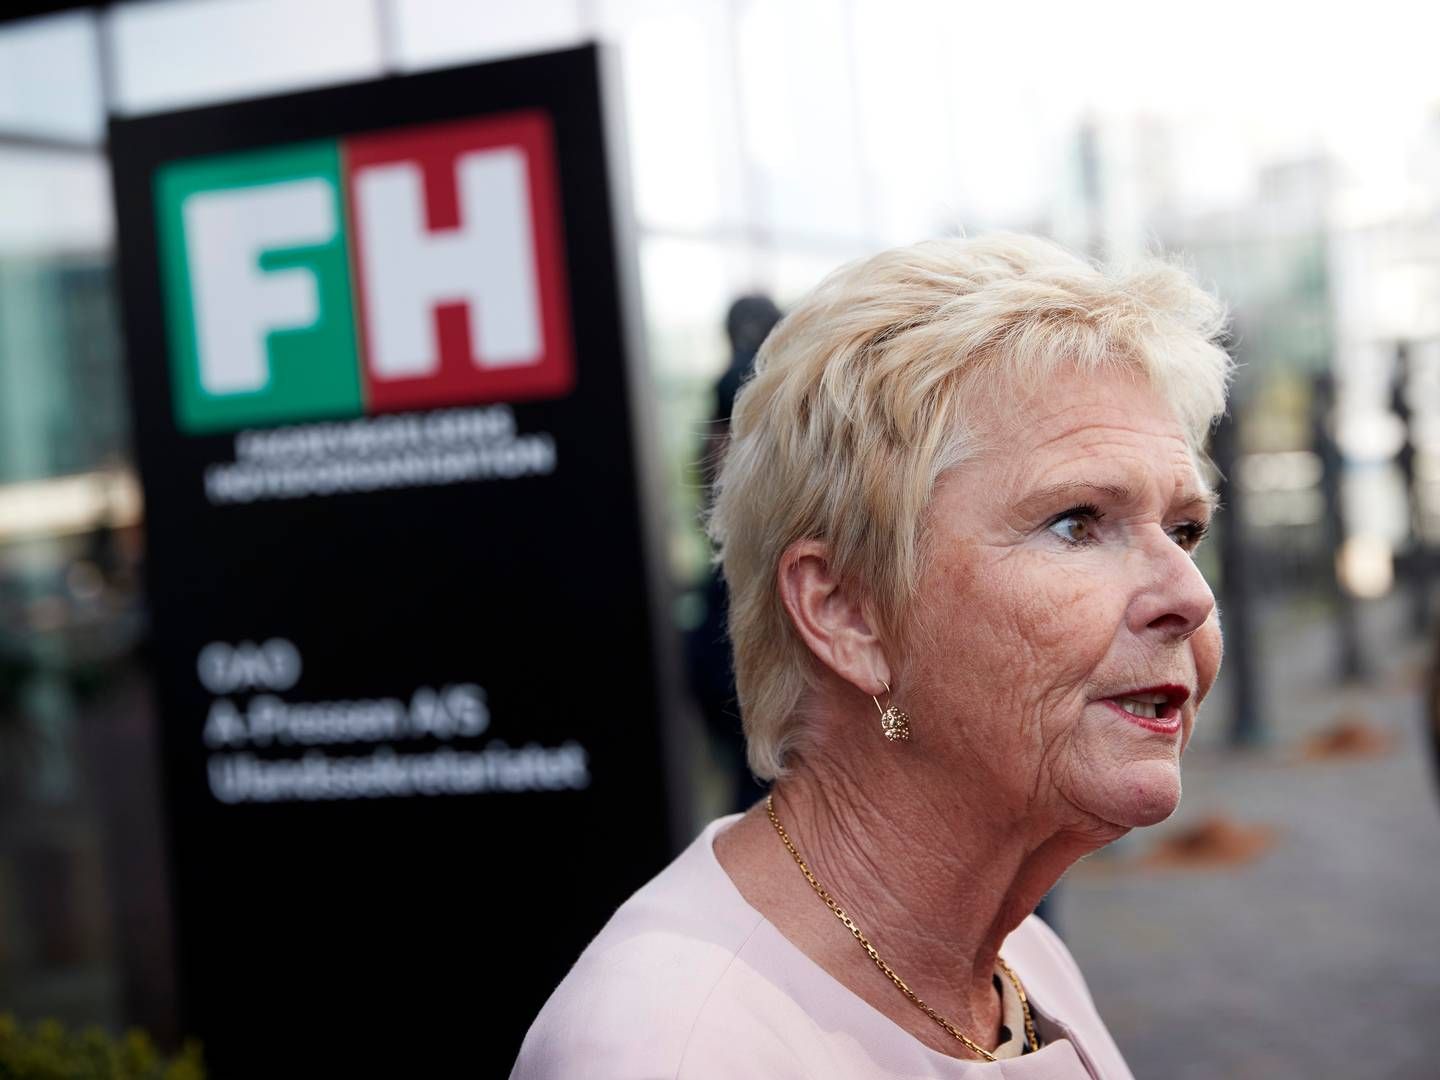 Lizette Risgaard har været formand for FH - tidligere LO - siden 2015. | Foto: Jens Dresling